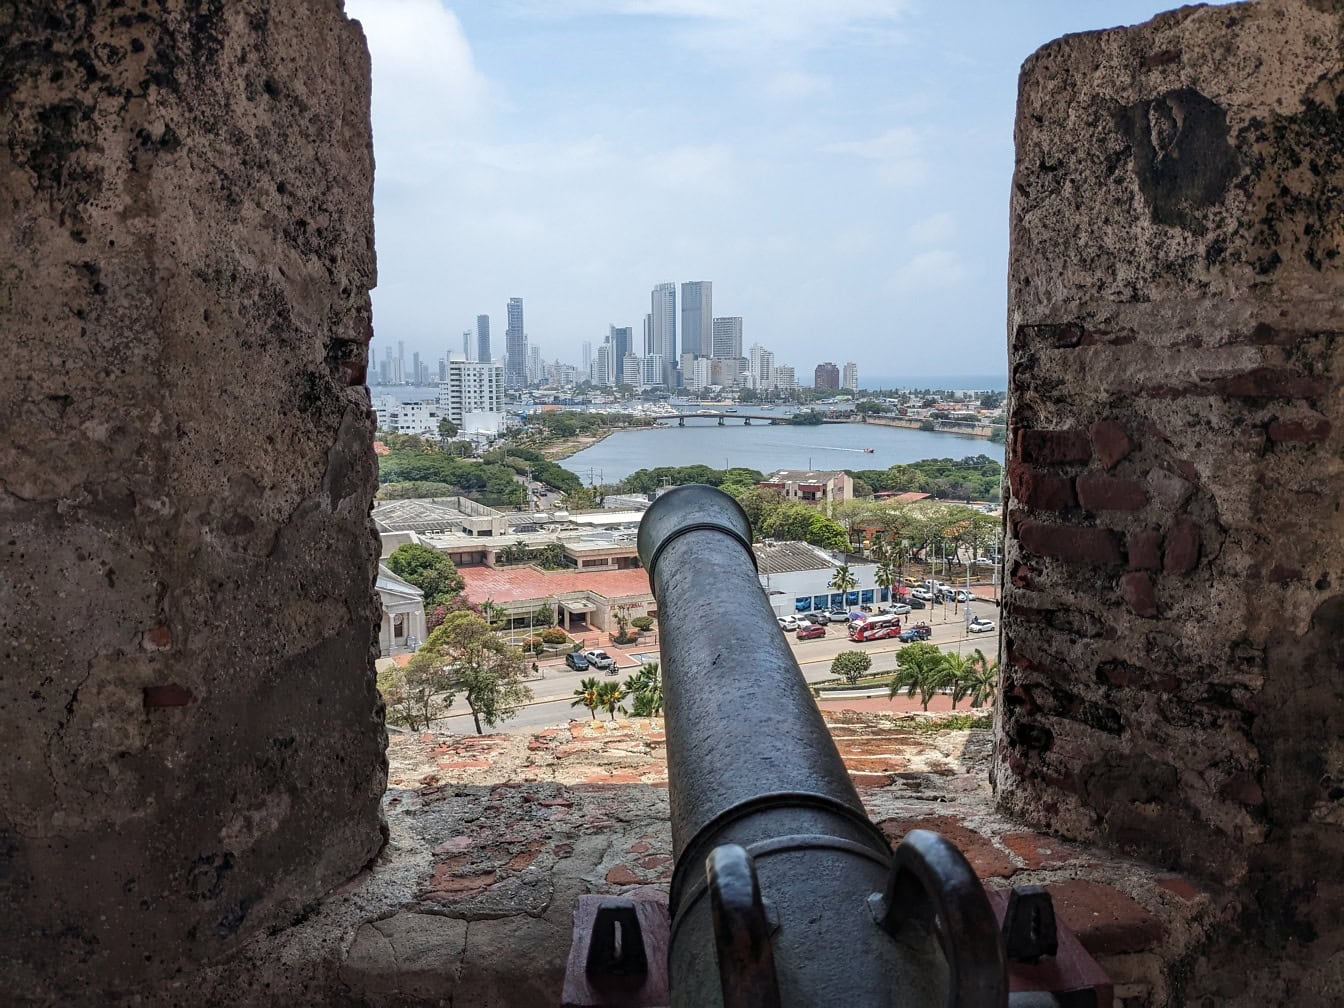 Dělo vyhlížející z okna pevnosti Castillo de San Felipe, turistické atrakce ve městě Cartagena v Kolumbii